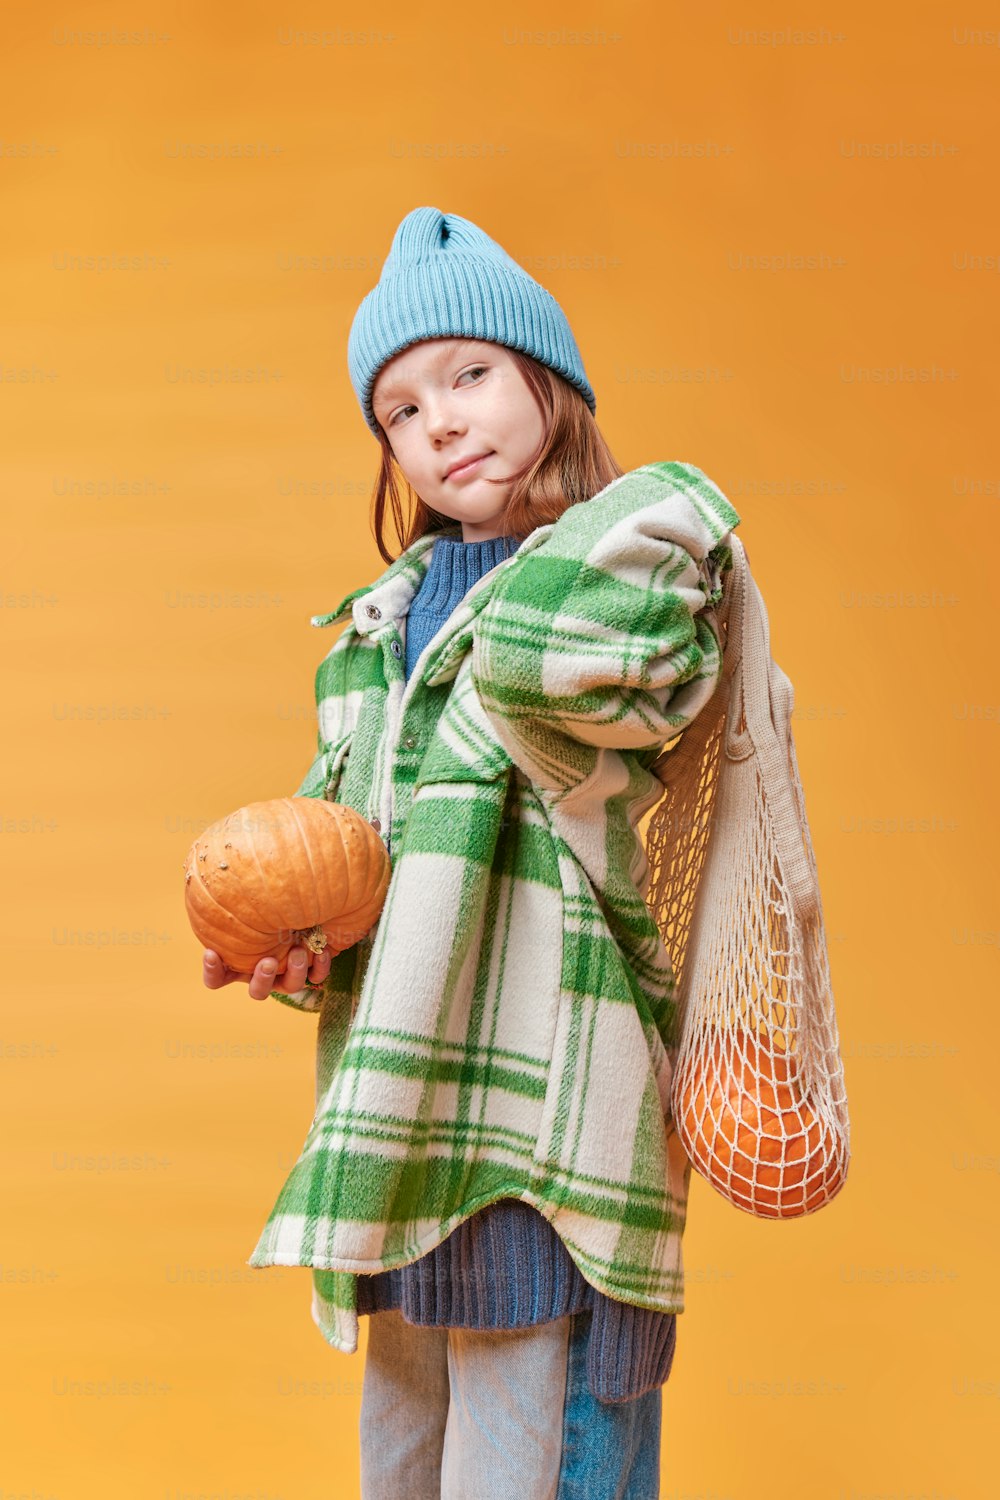 a little girl holding a pumpkin and a bag